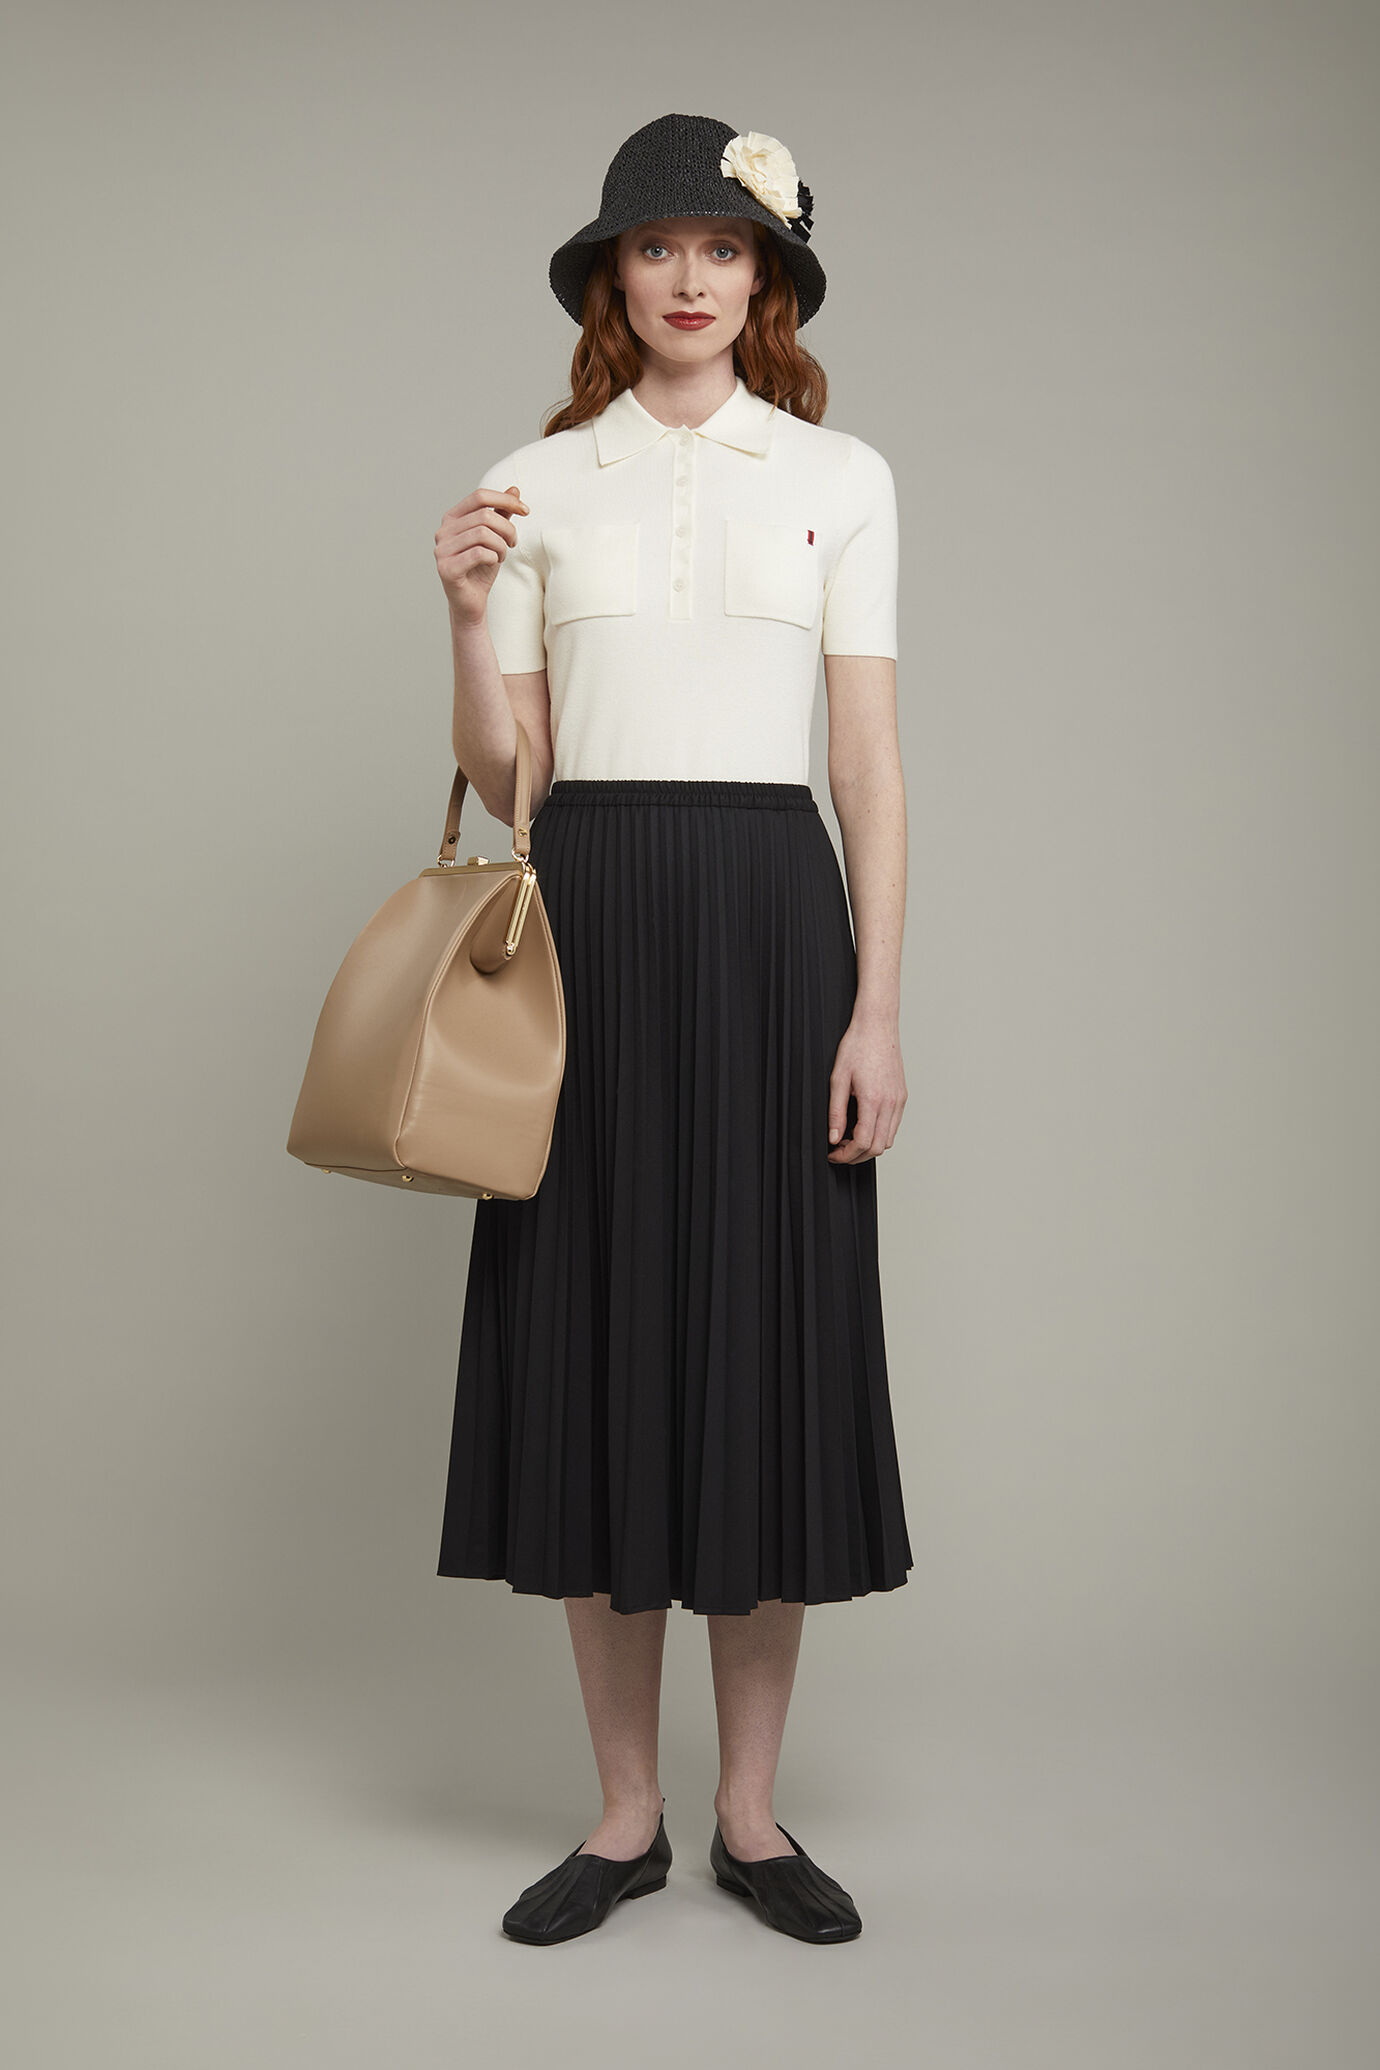 Women's pleated skirt regular fit